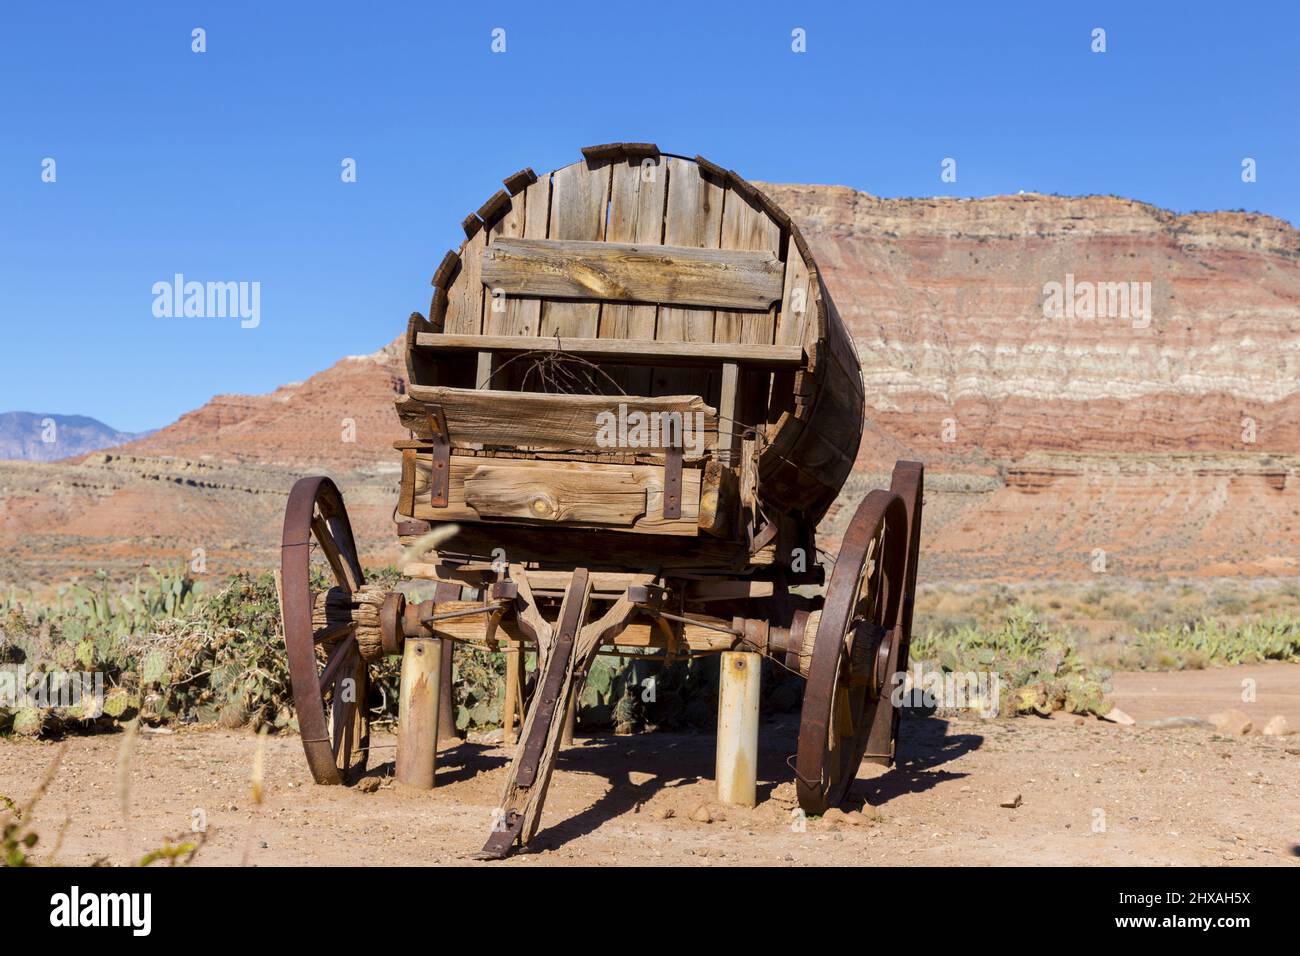 Reproducción de la rueda del vagón del vagón del West Stage de madera antigua vintage aislada con Western Red Rock Canyon Cliffs Utah Paisaje en el fondo Foto de stock